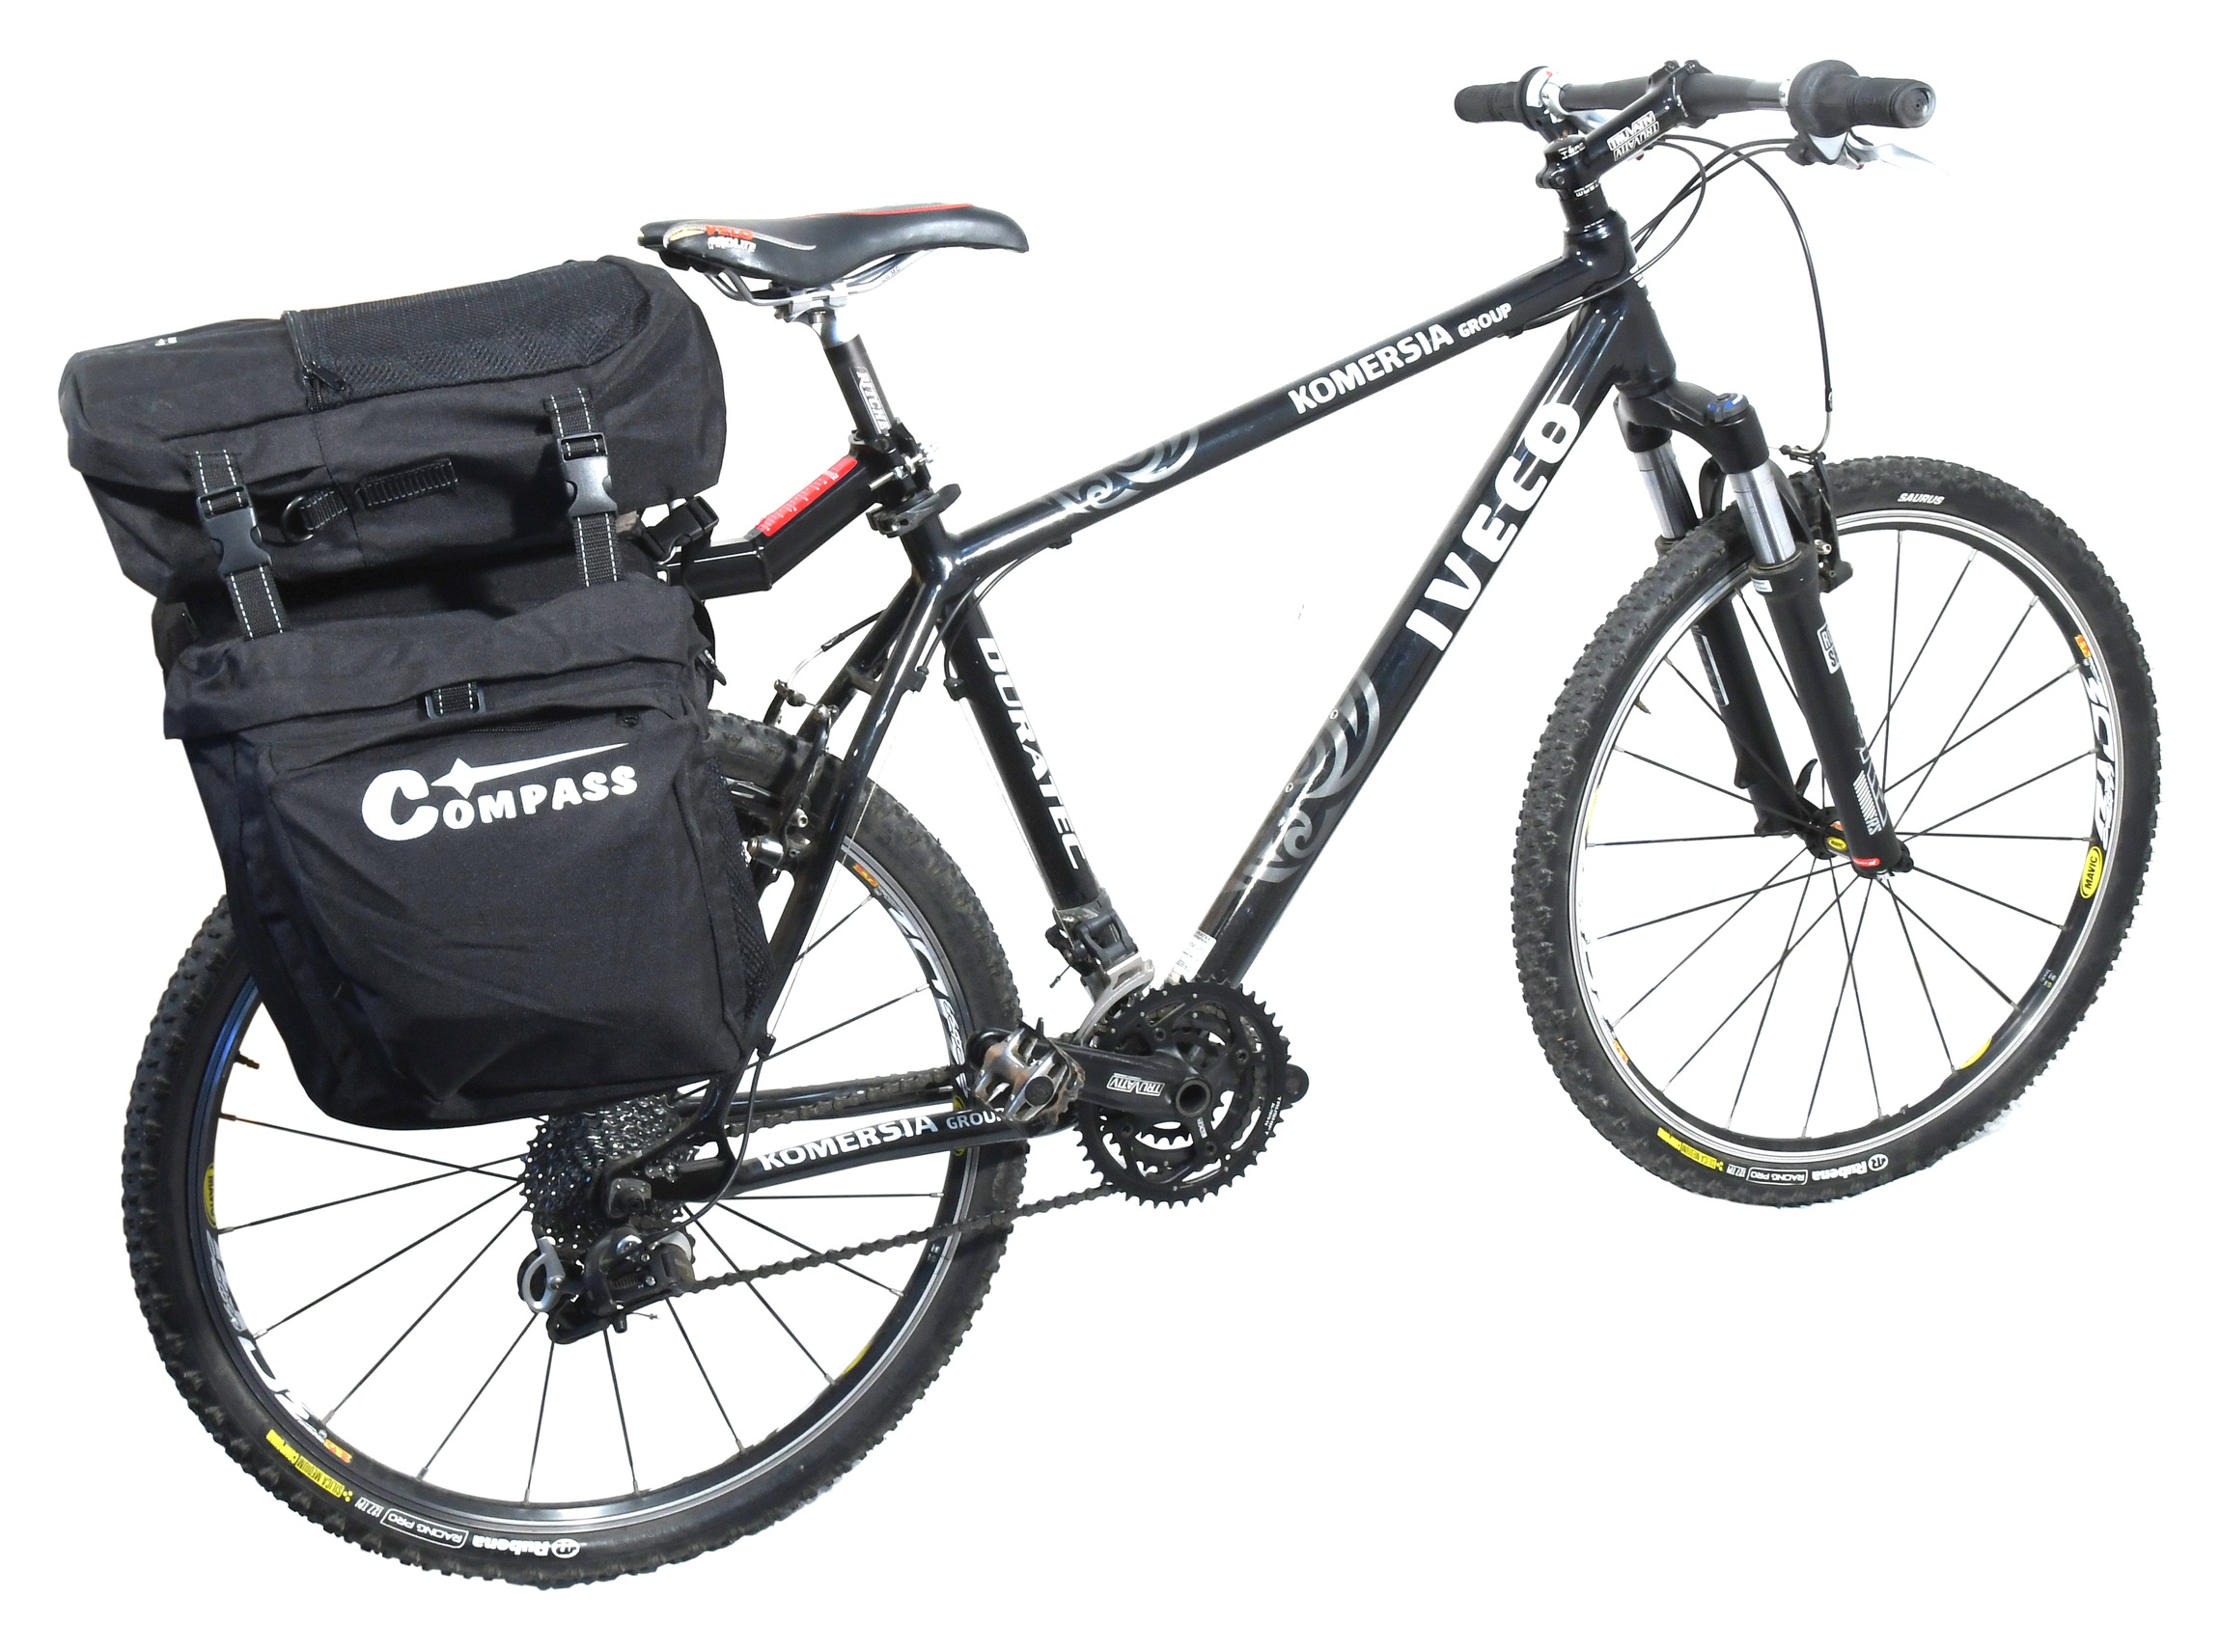 Cyklistická brašna Compass Bike 12032 je vhodná na nákupy i vícedenní výlety, neboť je opatřena 2 postranními 12l kapsami a vrchní 11l taškou s možností odepnutí.